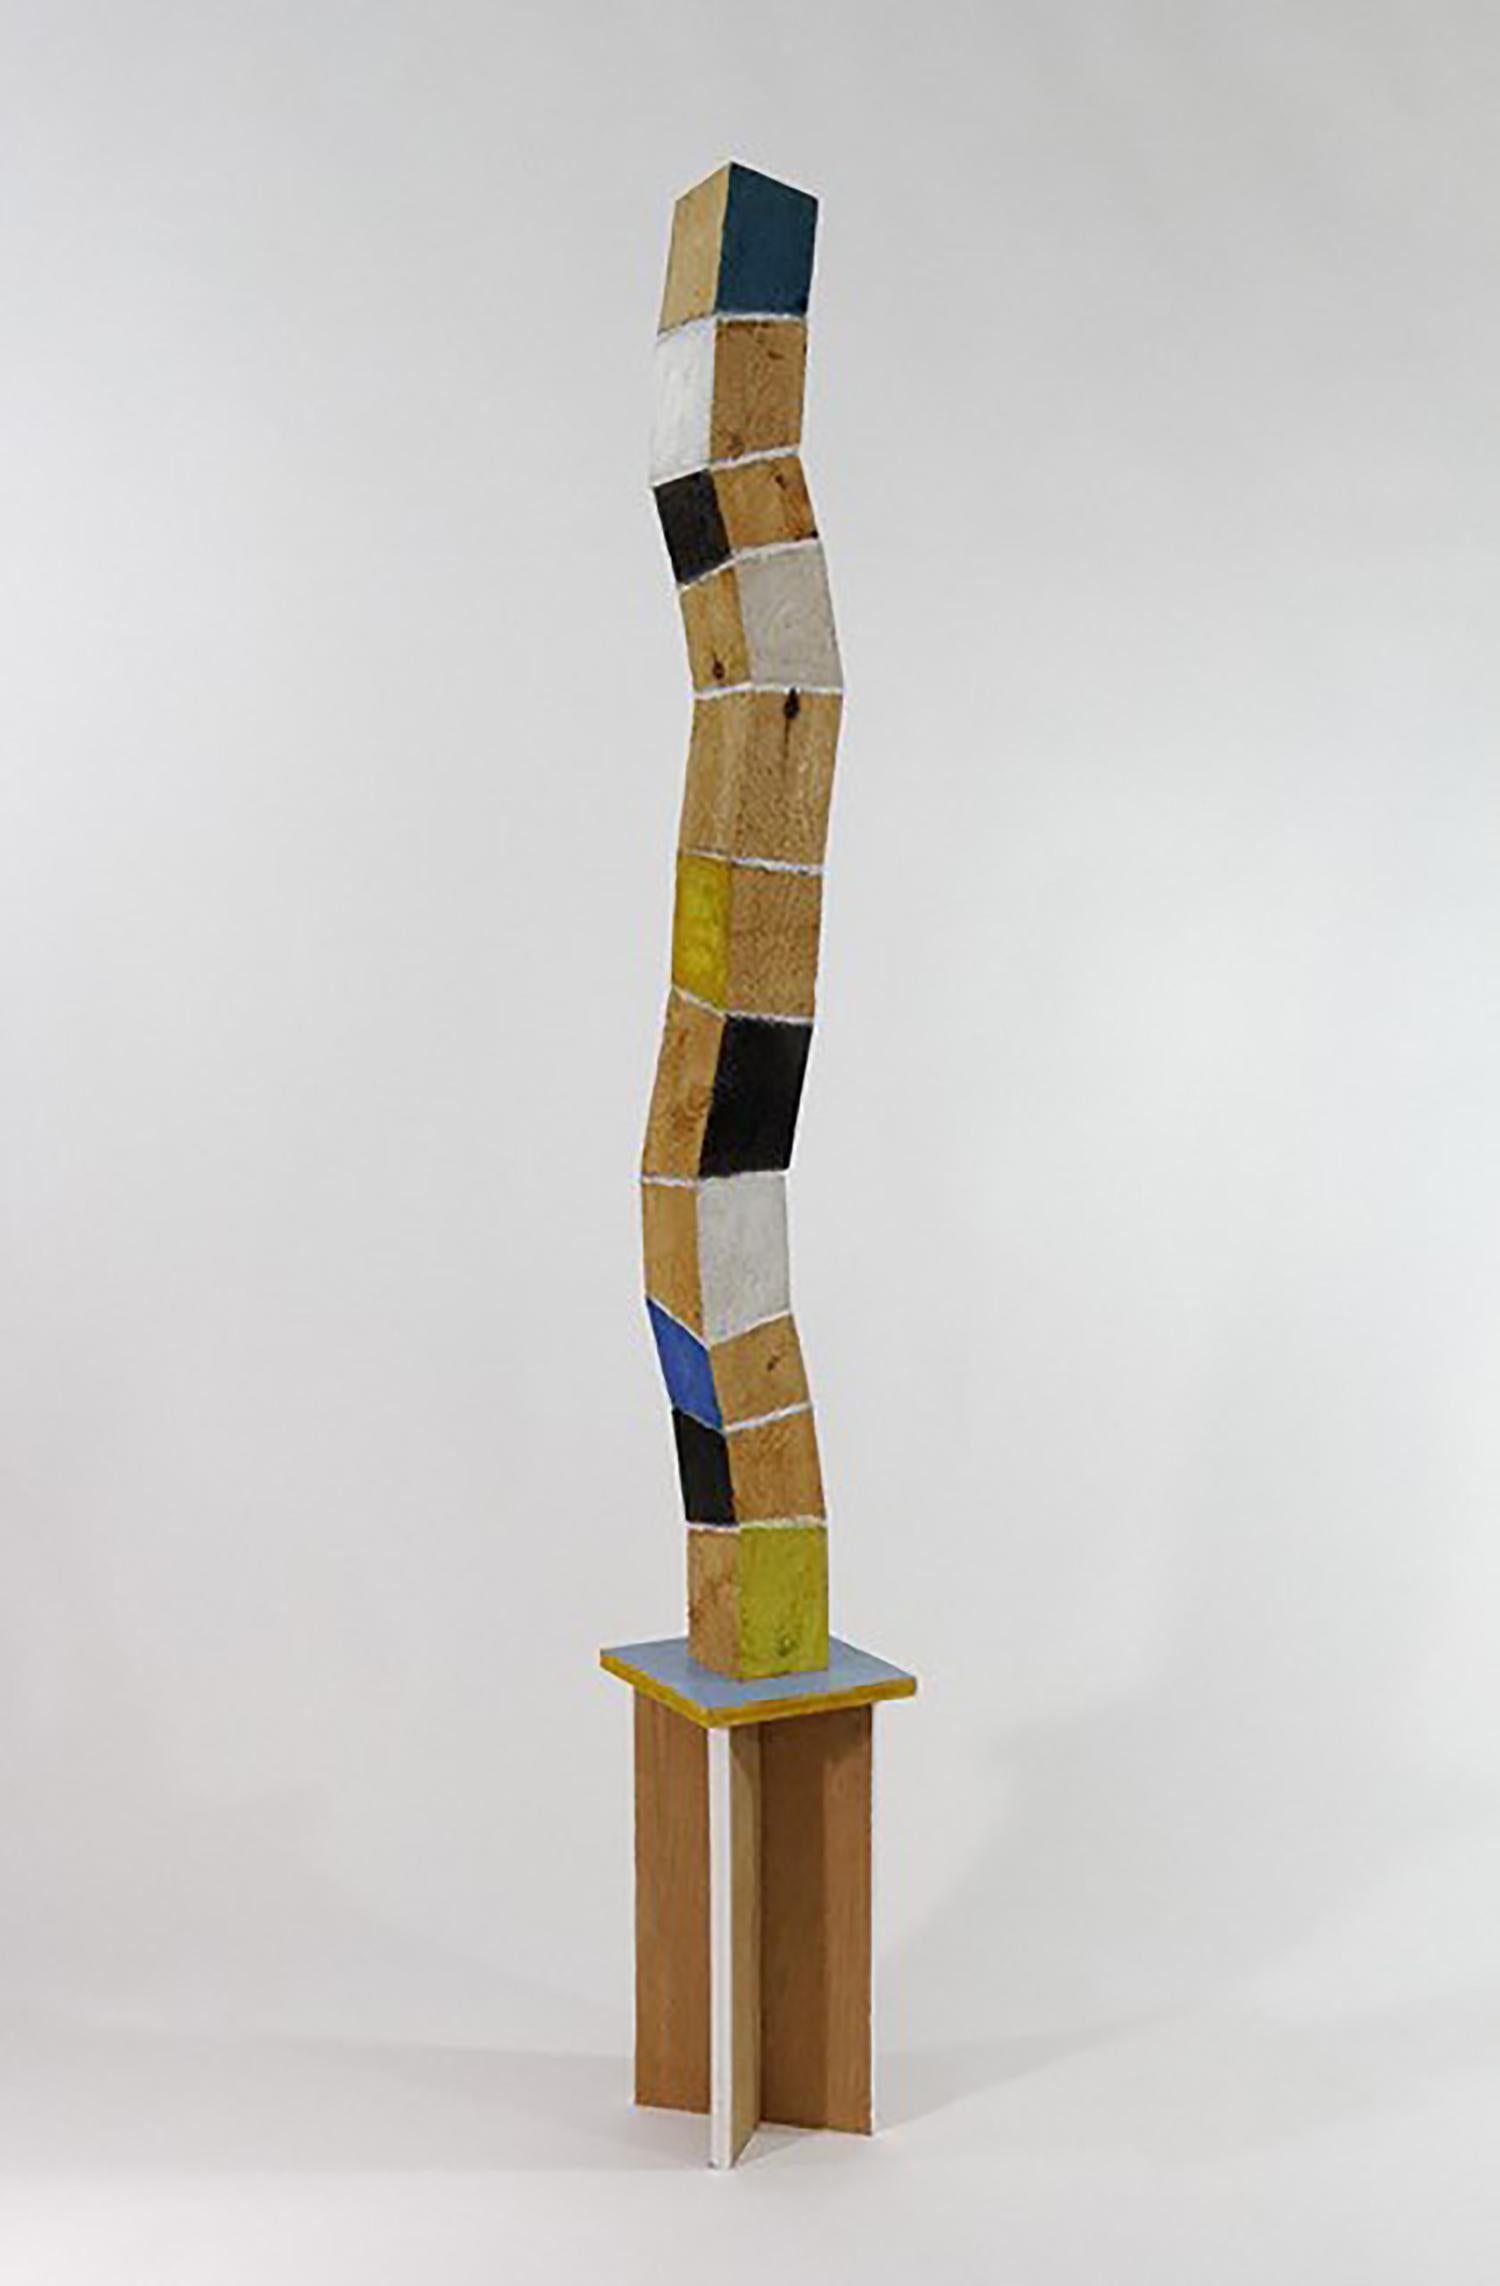 Nouvelle croissance (sculpture de tour debout verticale en bois courbé et multicolore)  - Contemporain Sculpture par Peter Hoffman